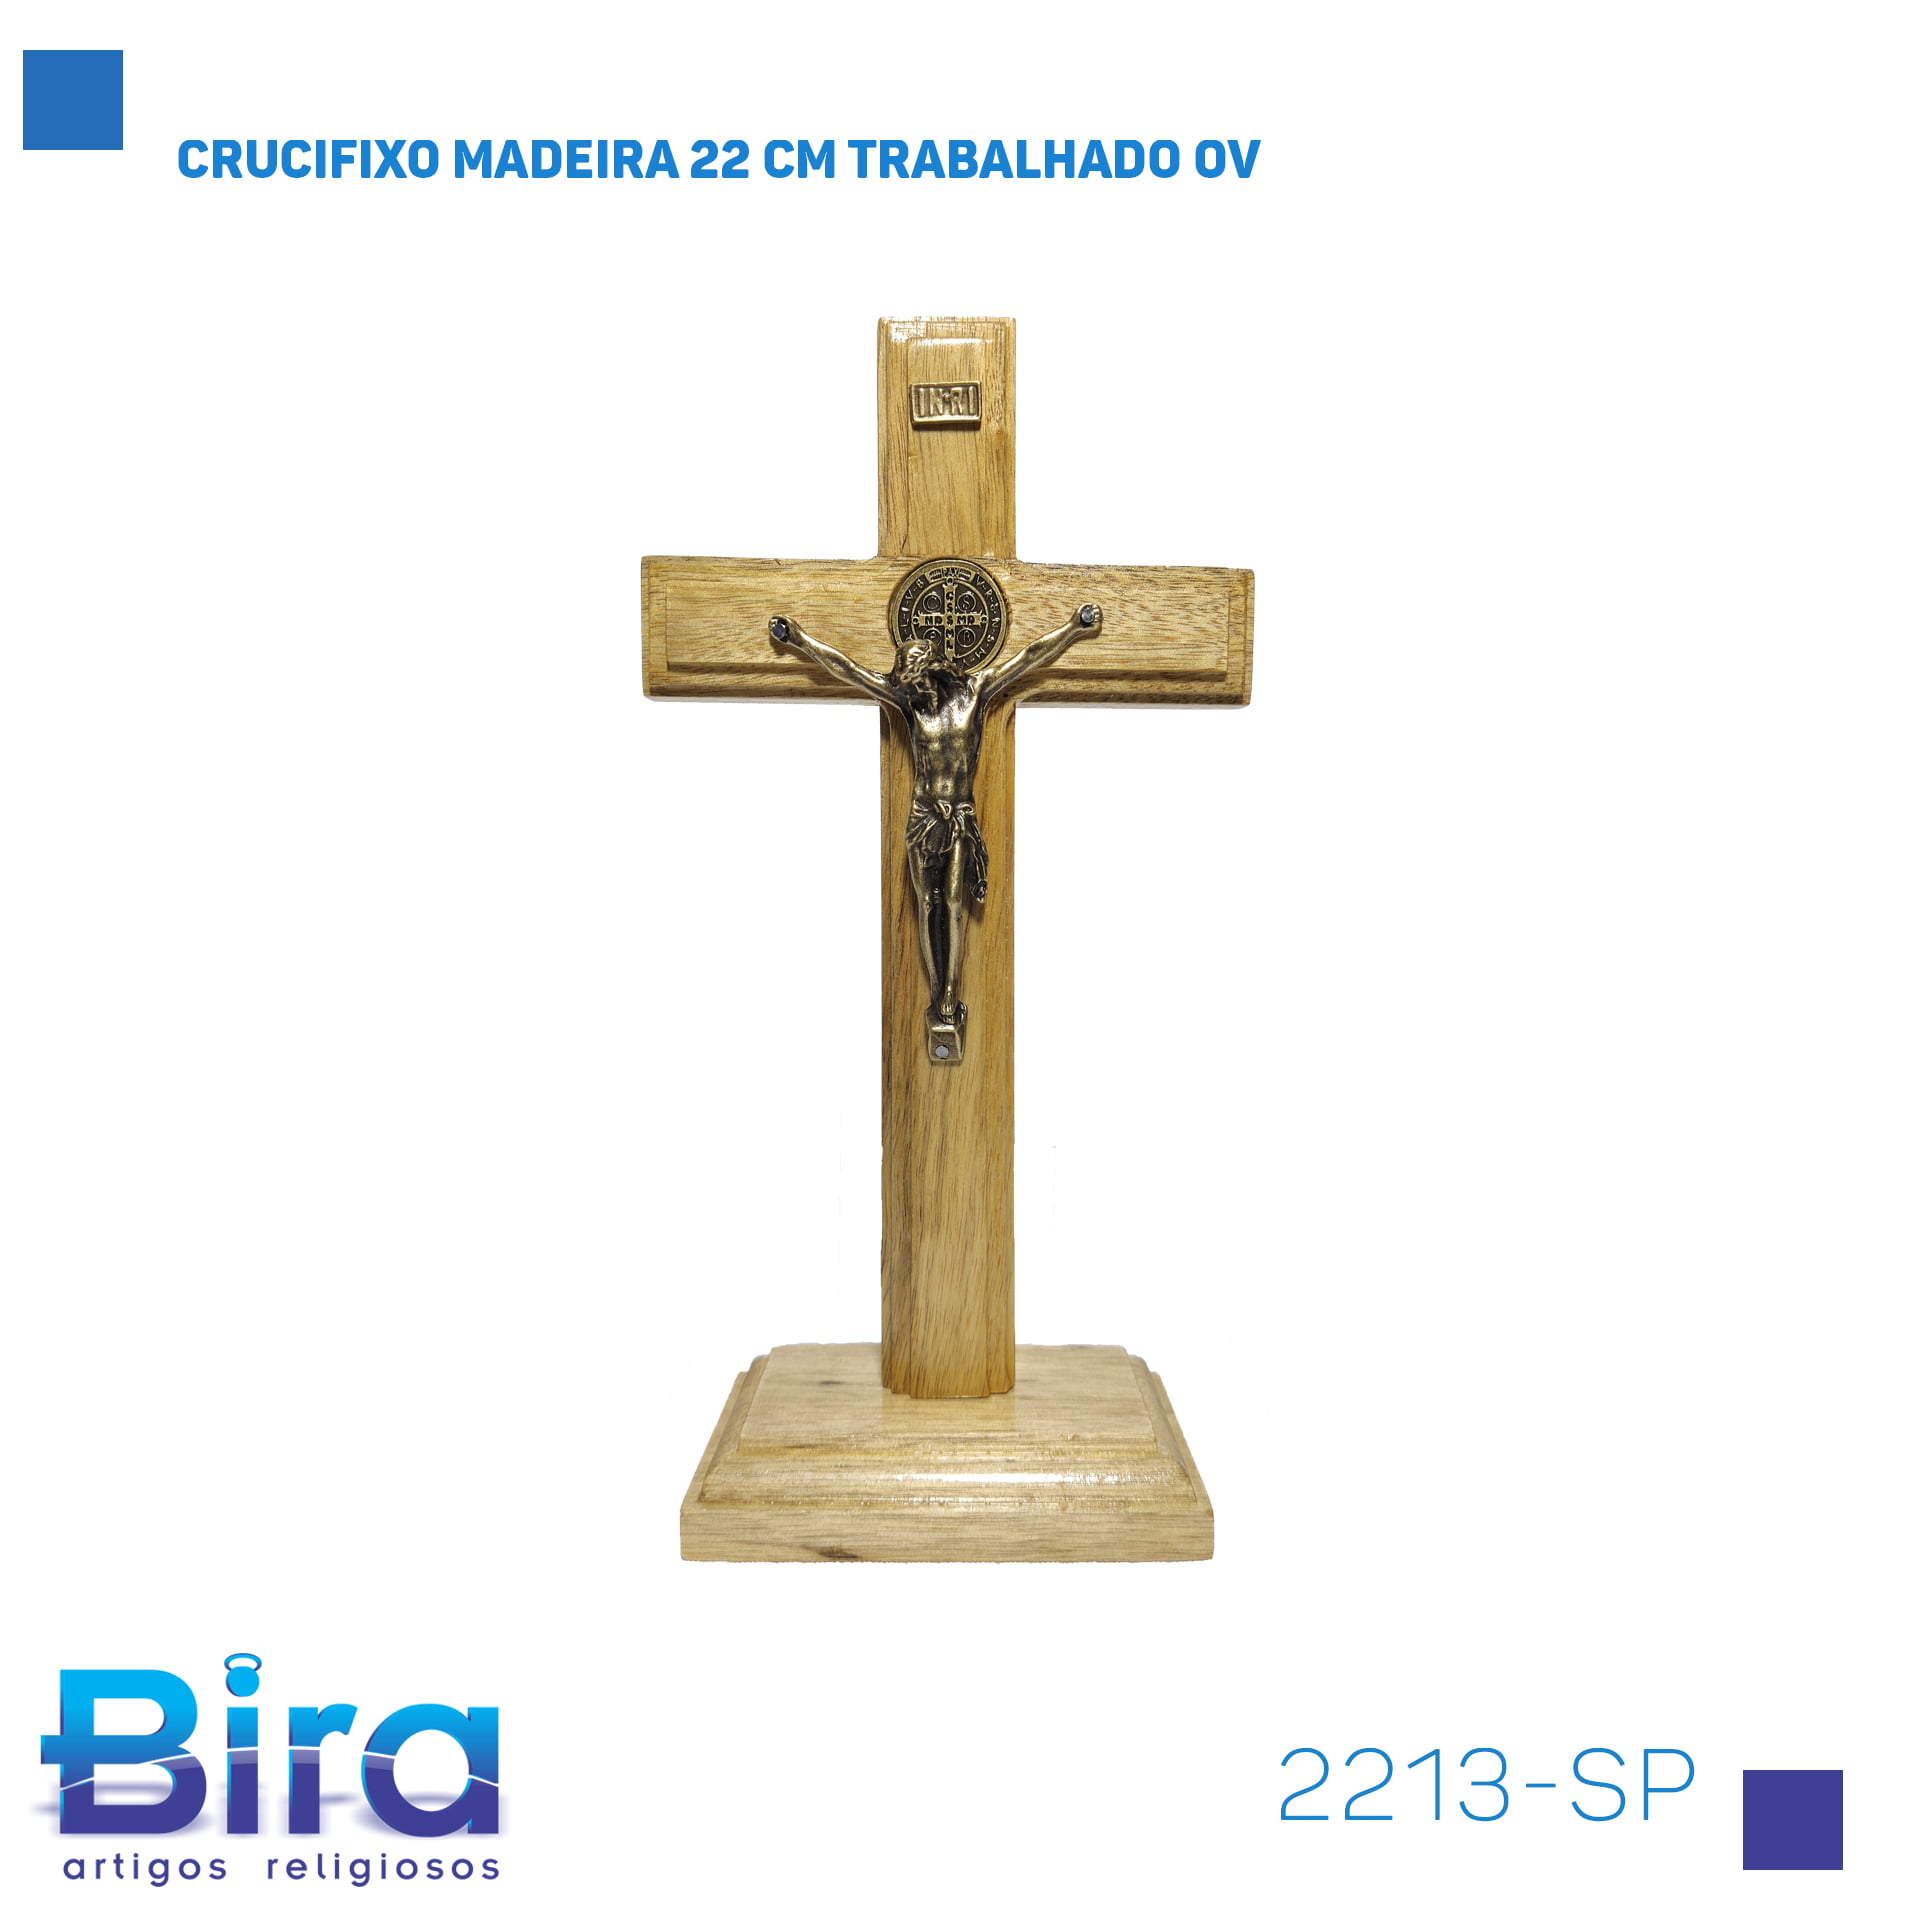 Bira Artigos Religiosos - CRUCIFIXO MADEIRA 22 CM TRABALHADO OV - Cód 2213-SP